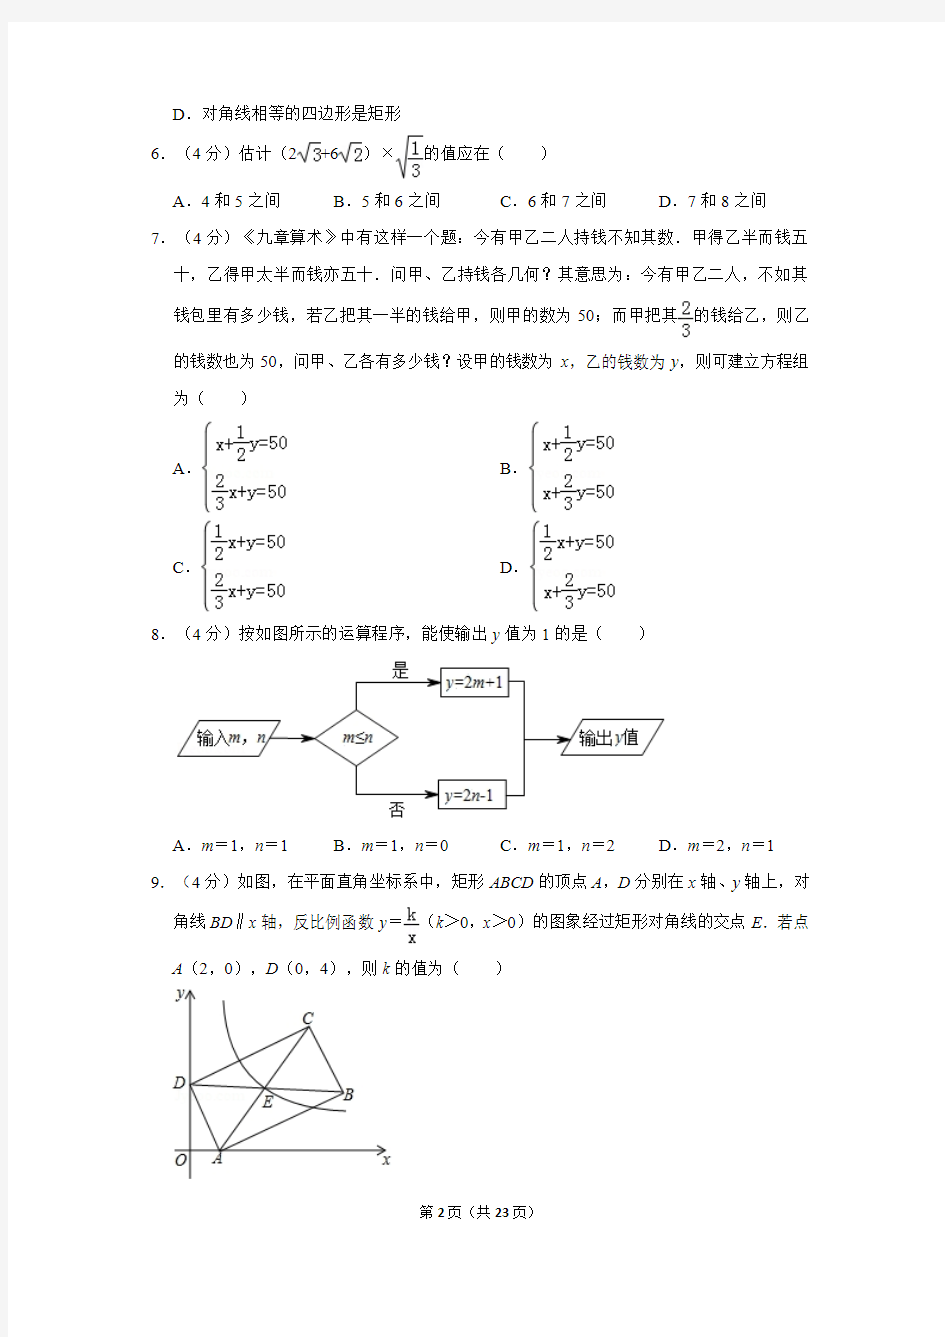 2019年重庆市中考数学试卷(a卷)及答案解析